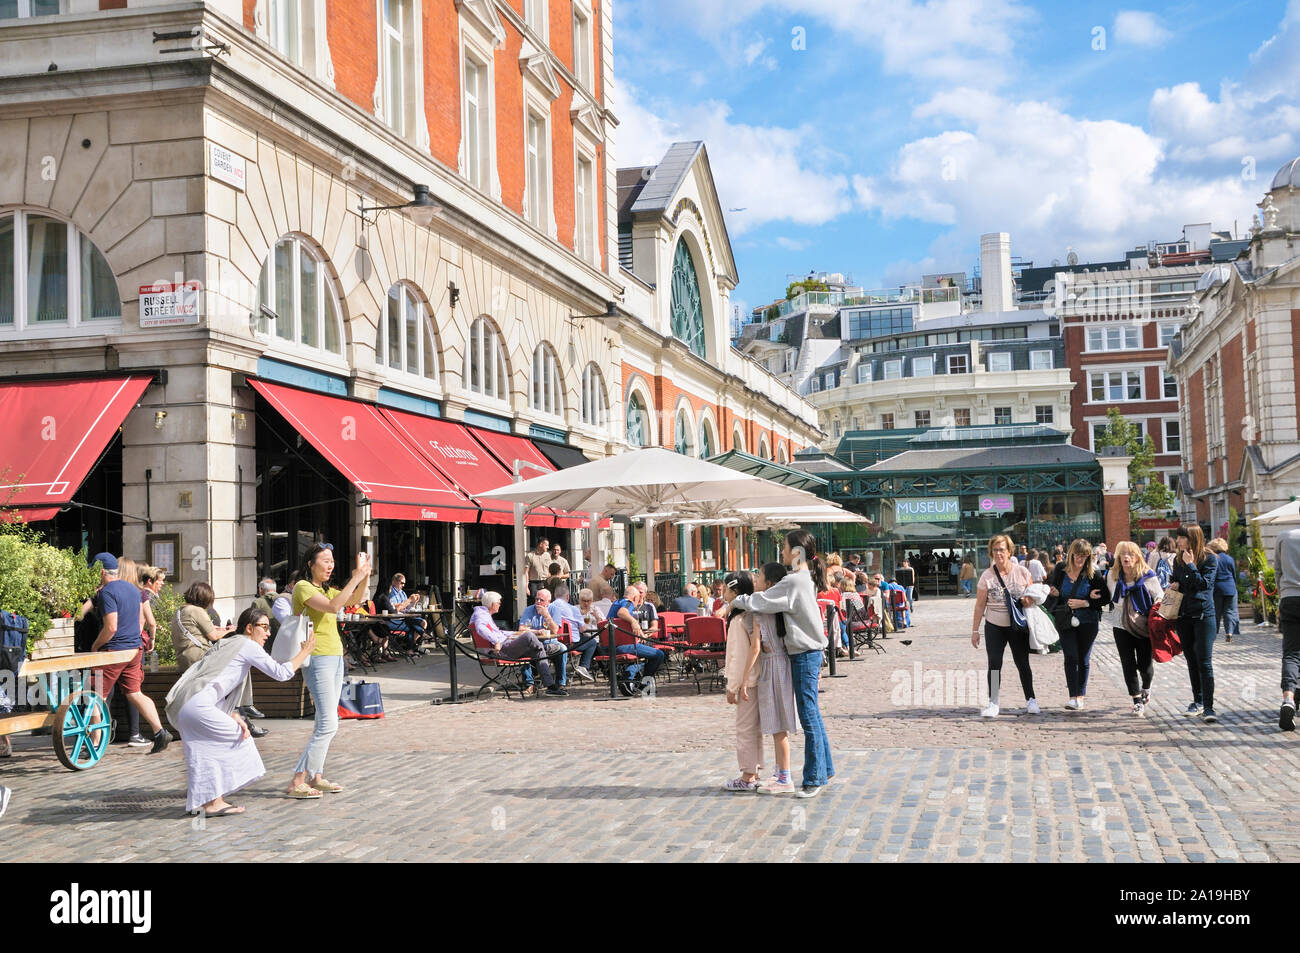 Les touristes profiter de l'été météo à Covent Garden Piazza dans le West End de Londres, Londres, Angleterre, Royaume-Uni Banque D'Images